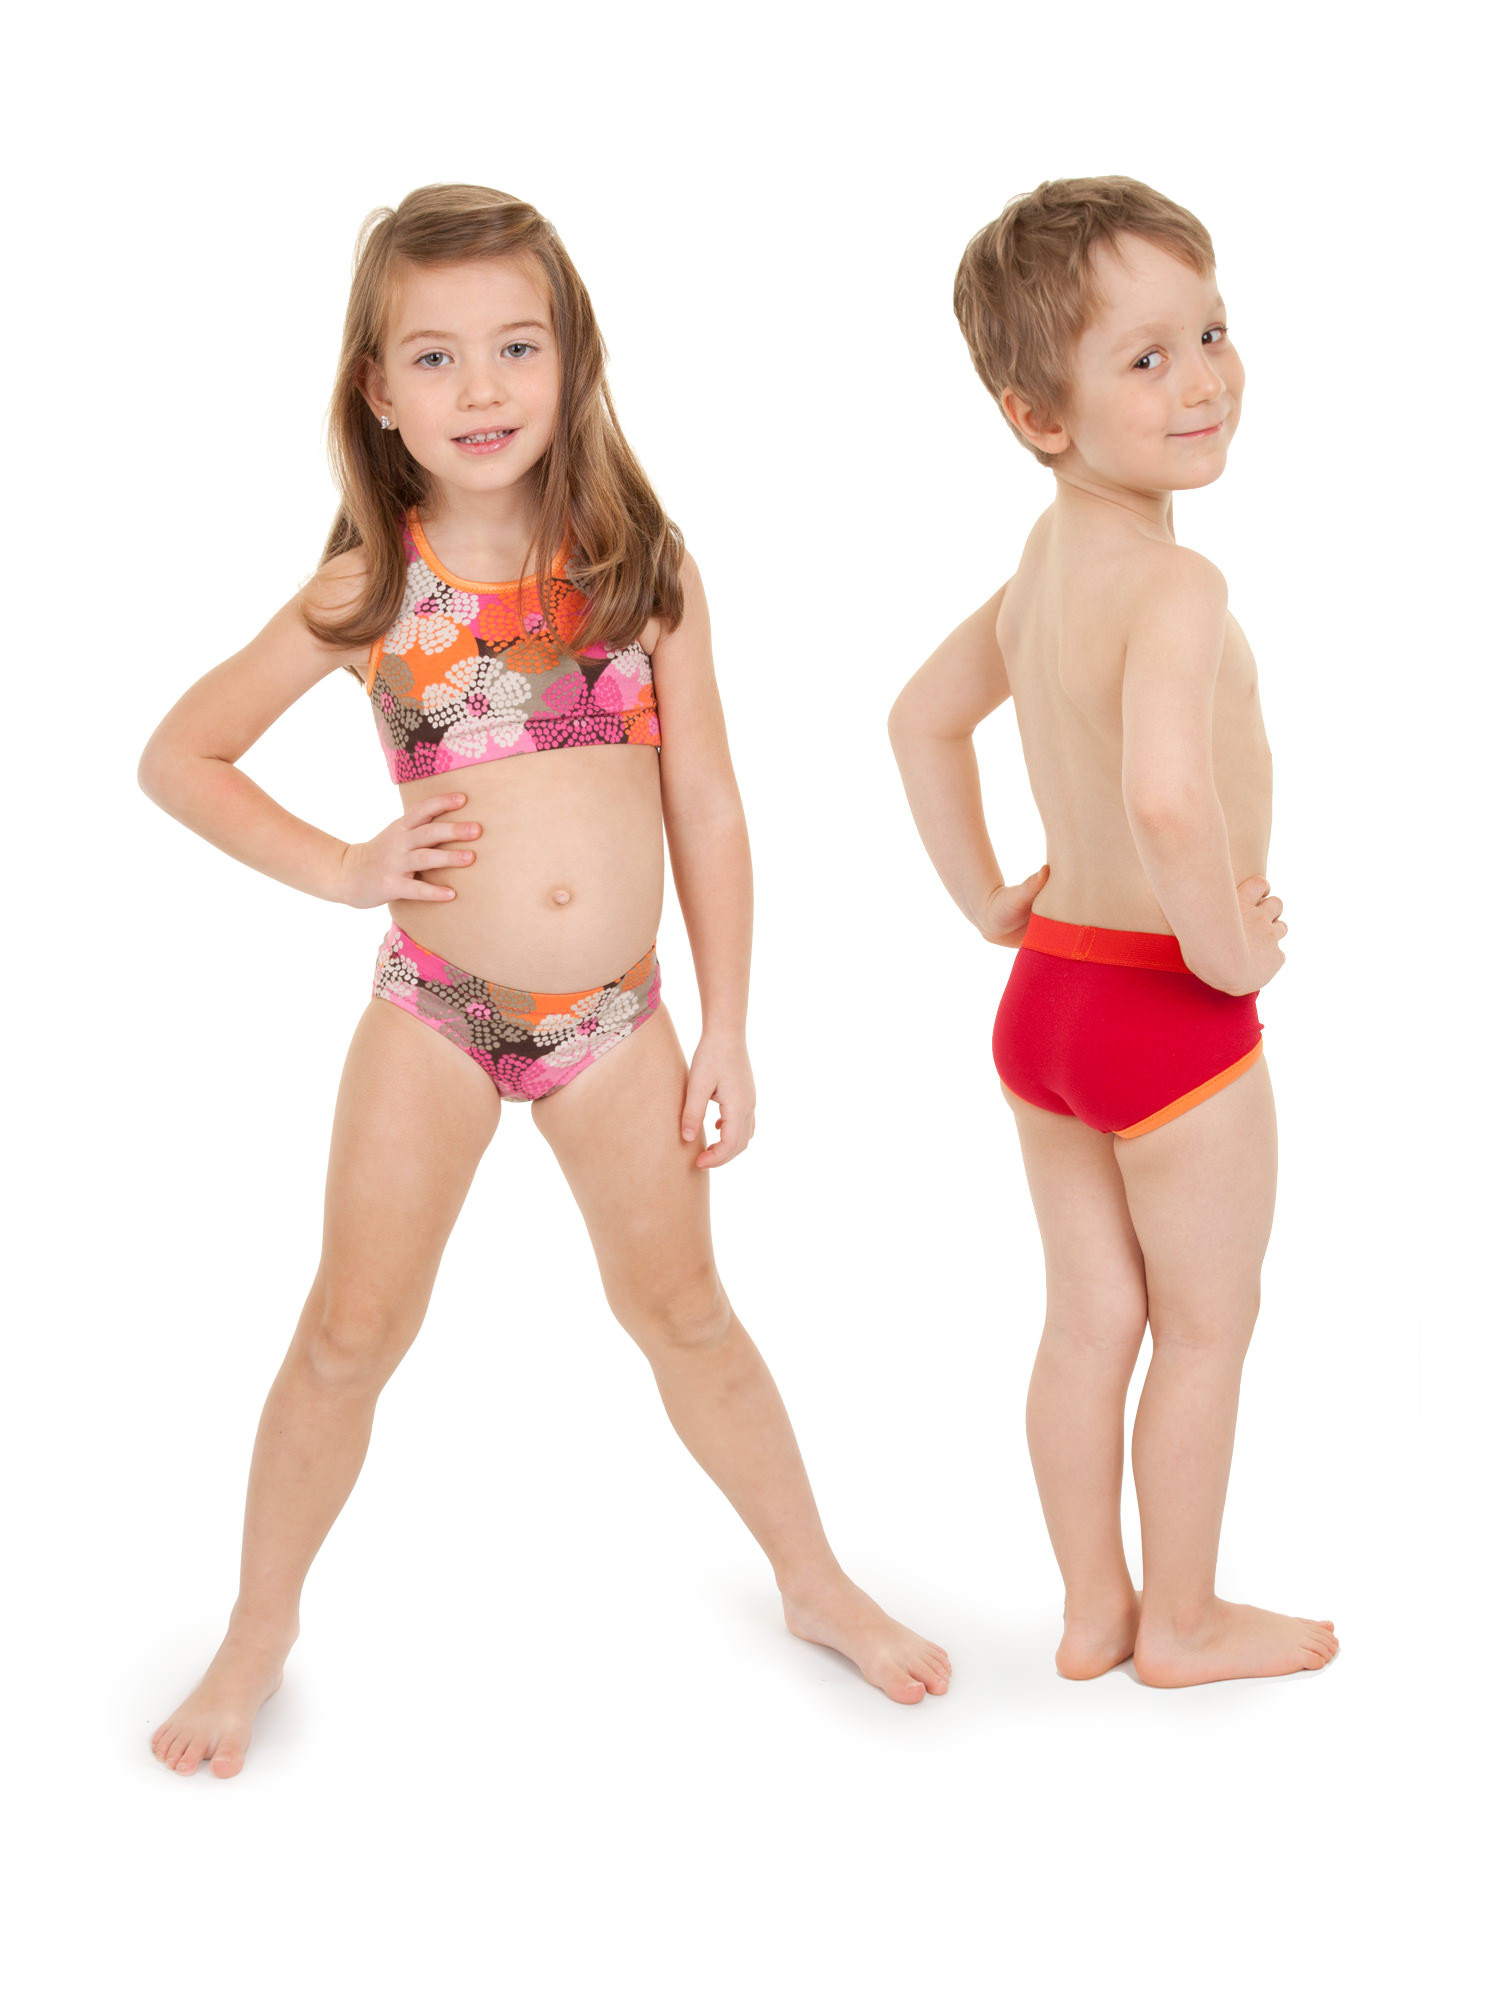 Jalie Underwear for Men, Woman and Children 3242 - B,Wear